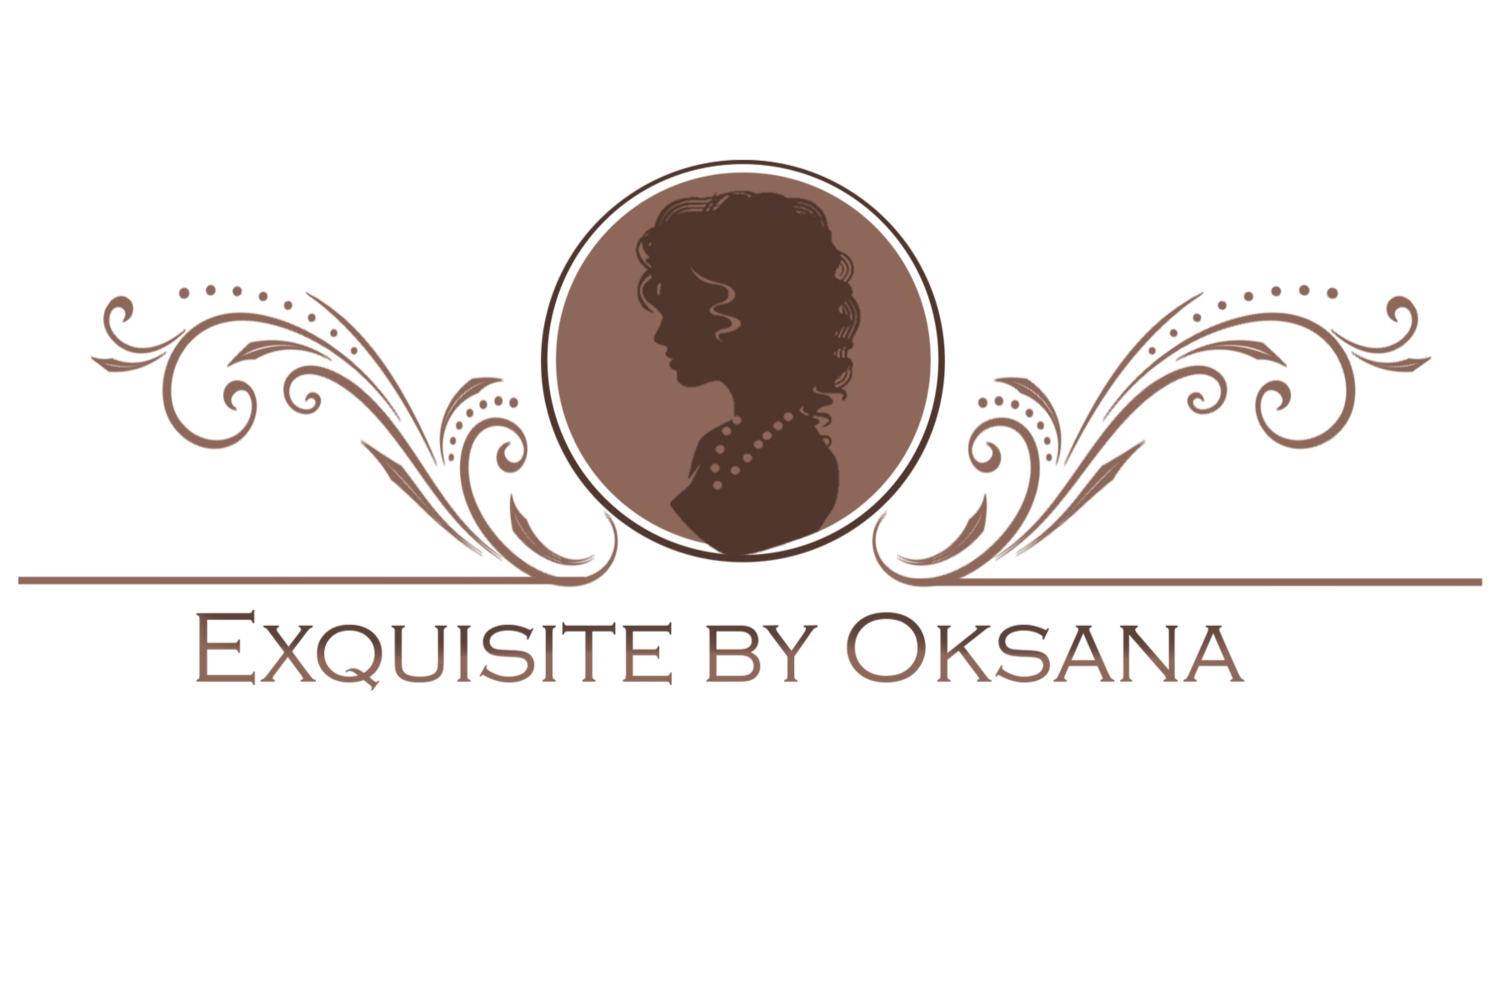 EXQUISITE BY OKSANA